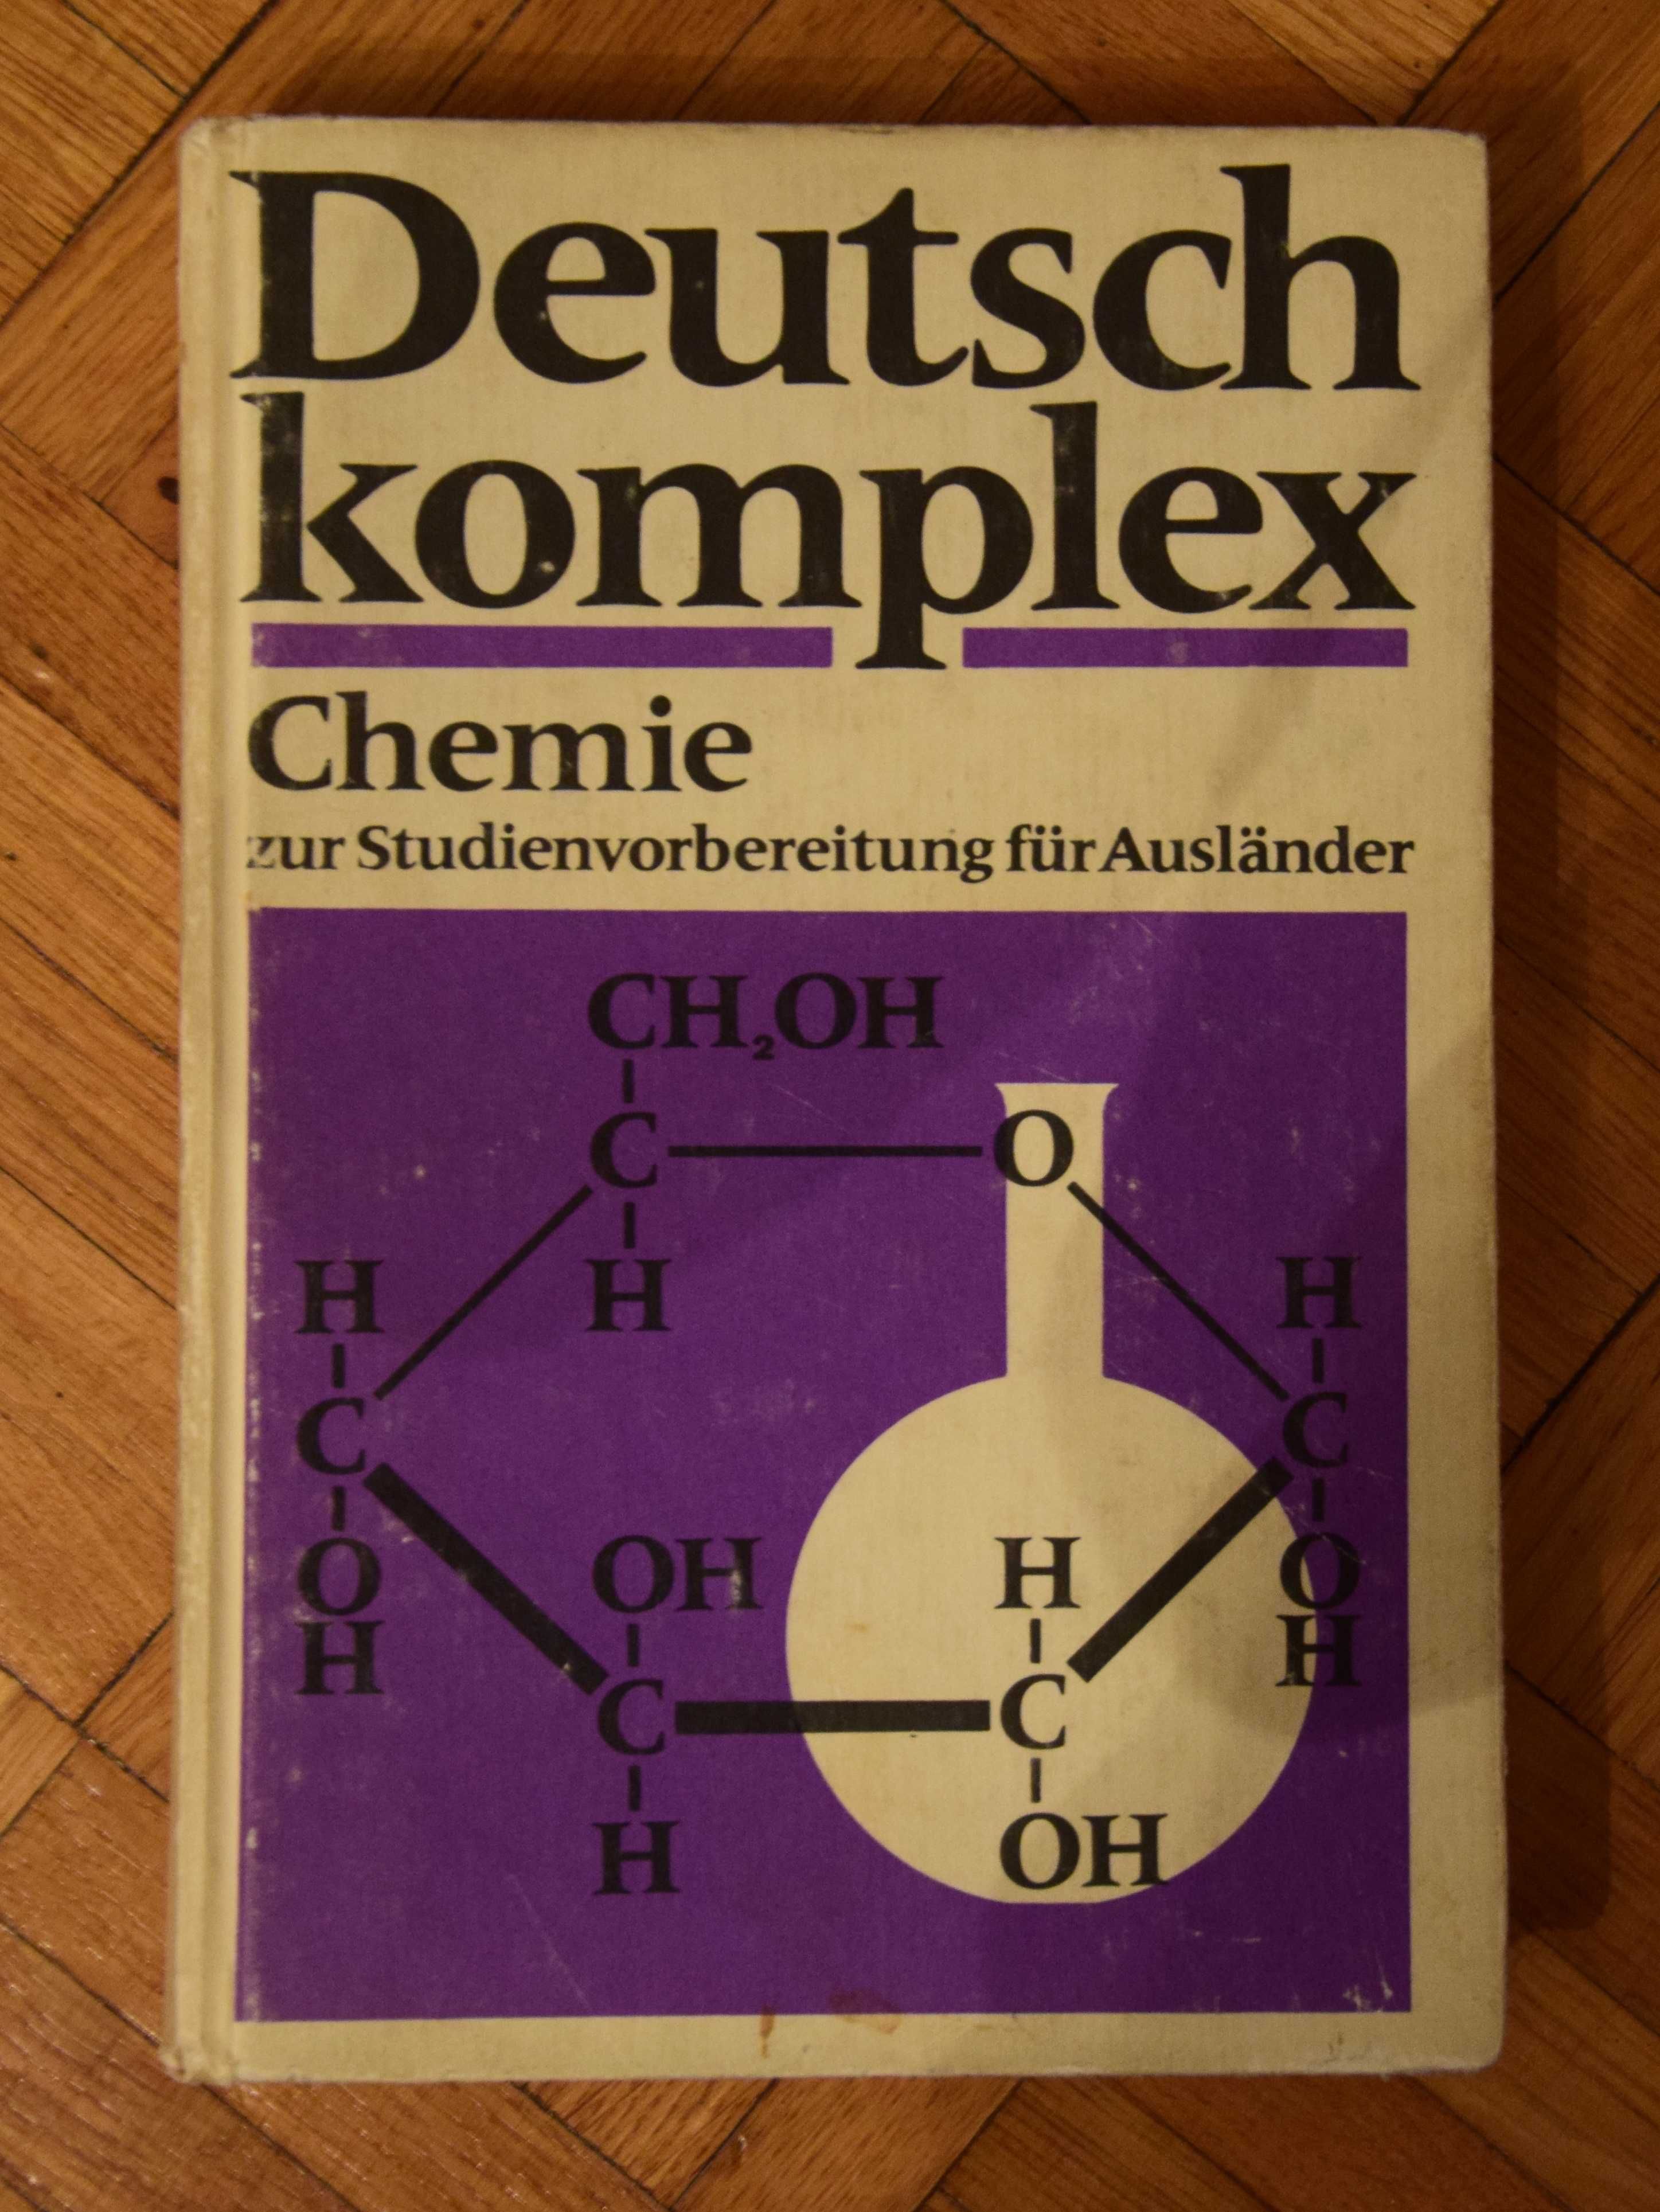 deutsch komplex chemie